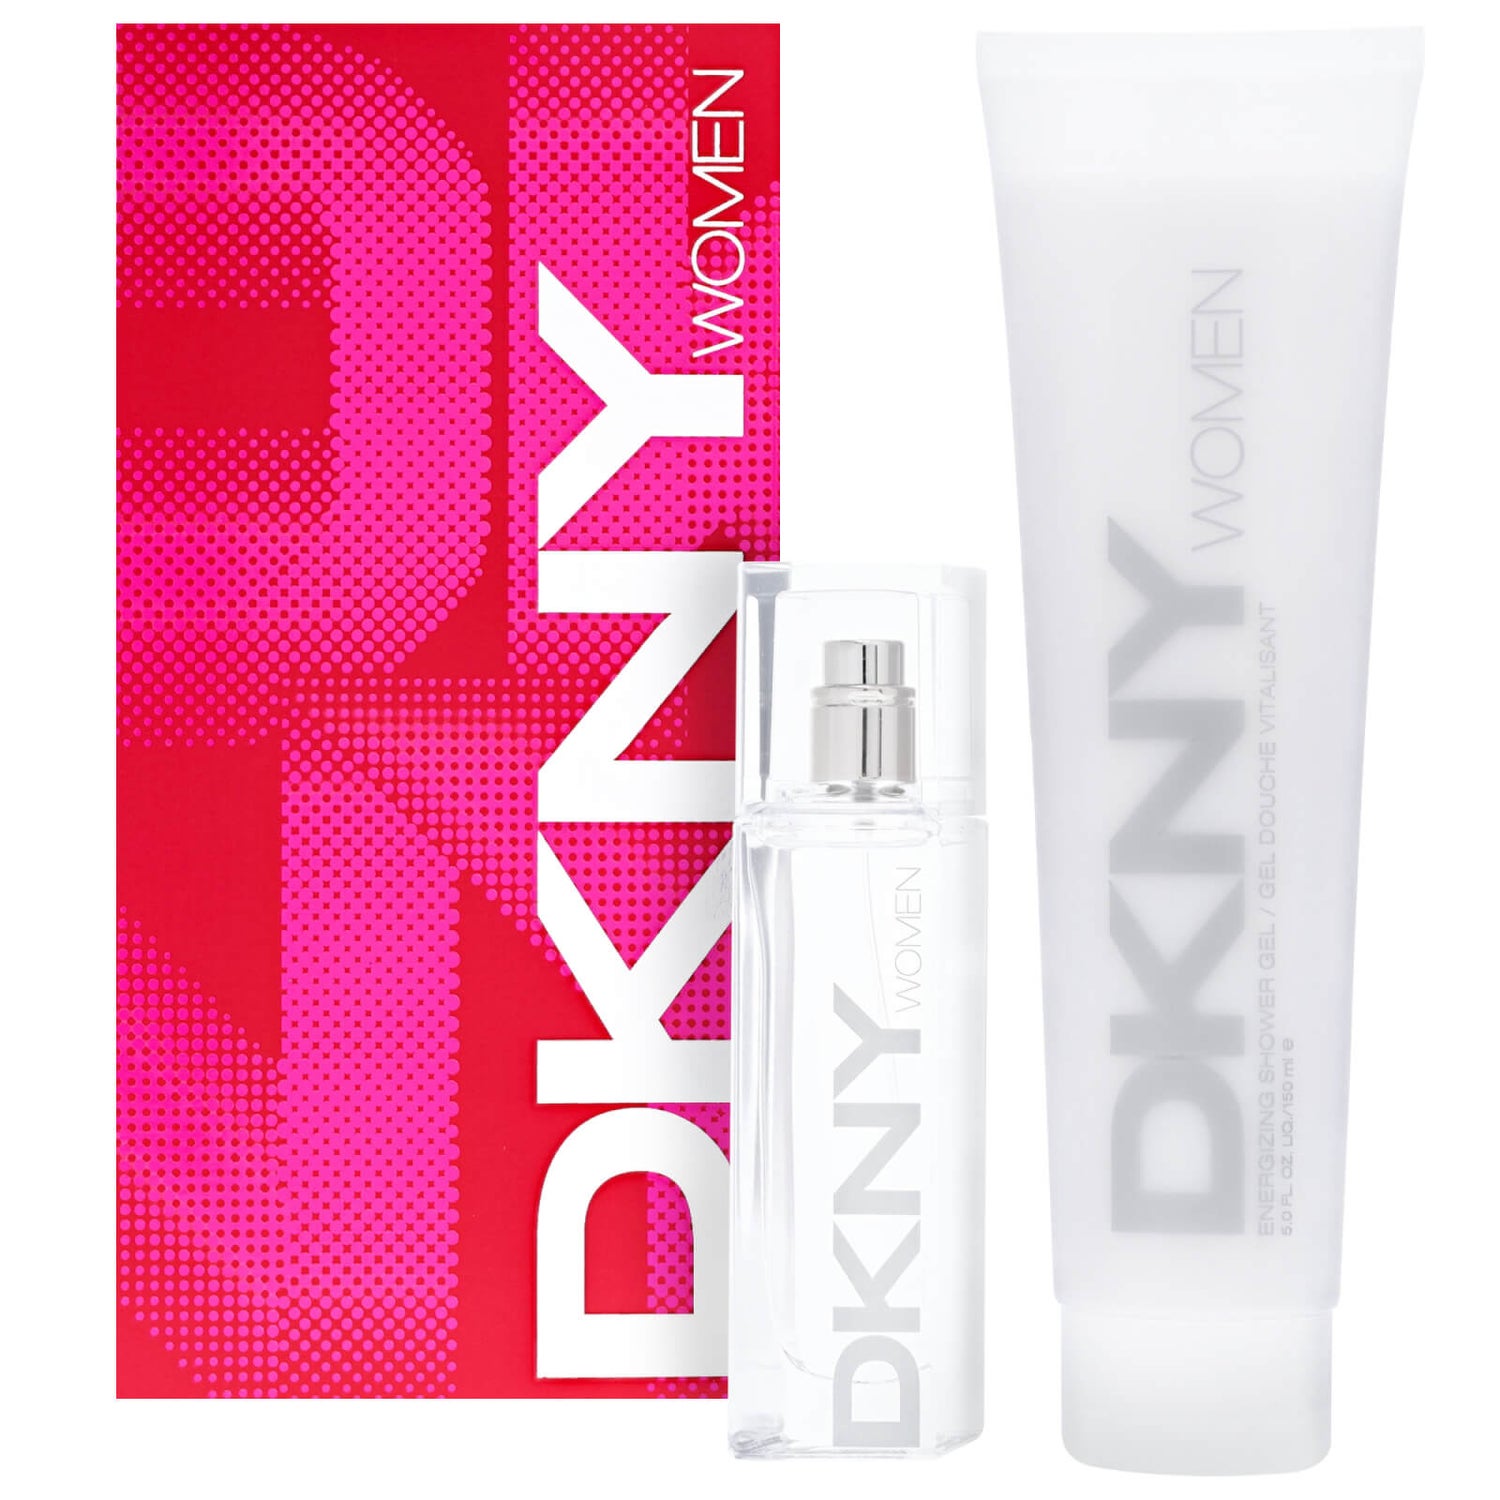 DKNY DKNY Women EdP Set 250 ml - Perfume Gift Set | Alza.cz